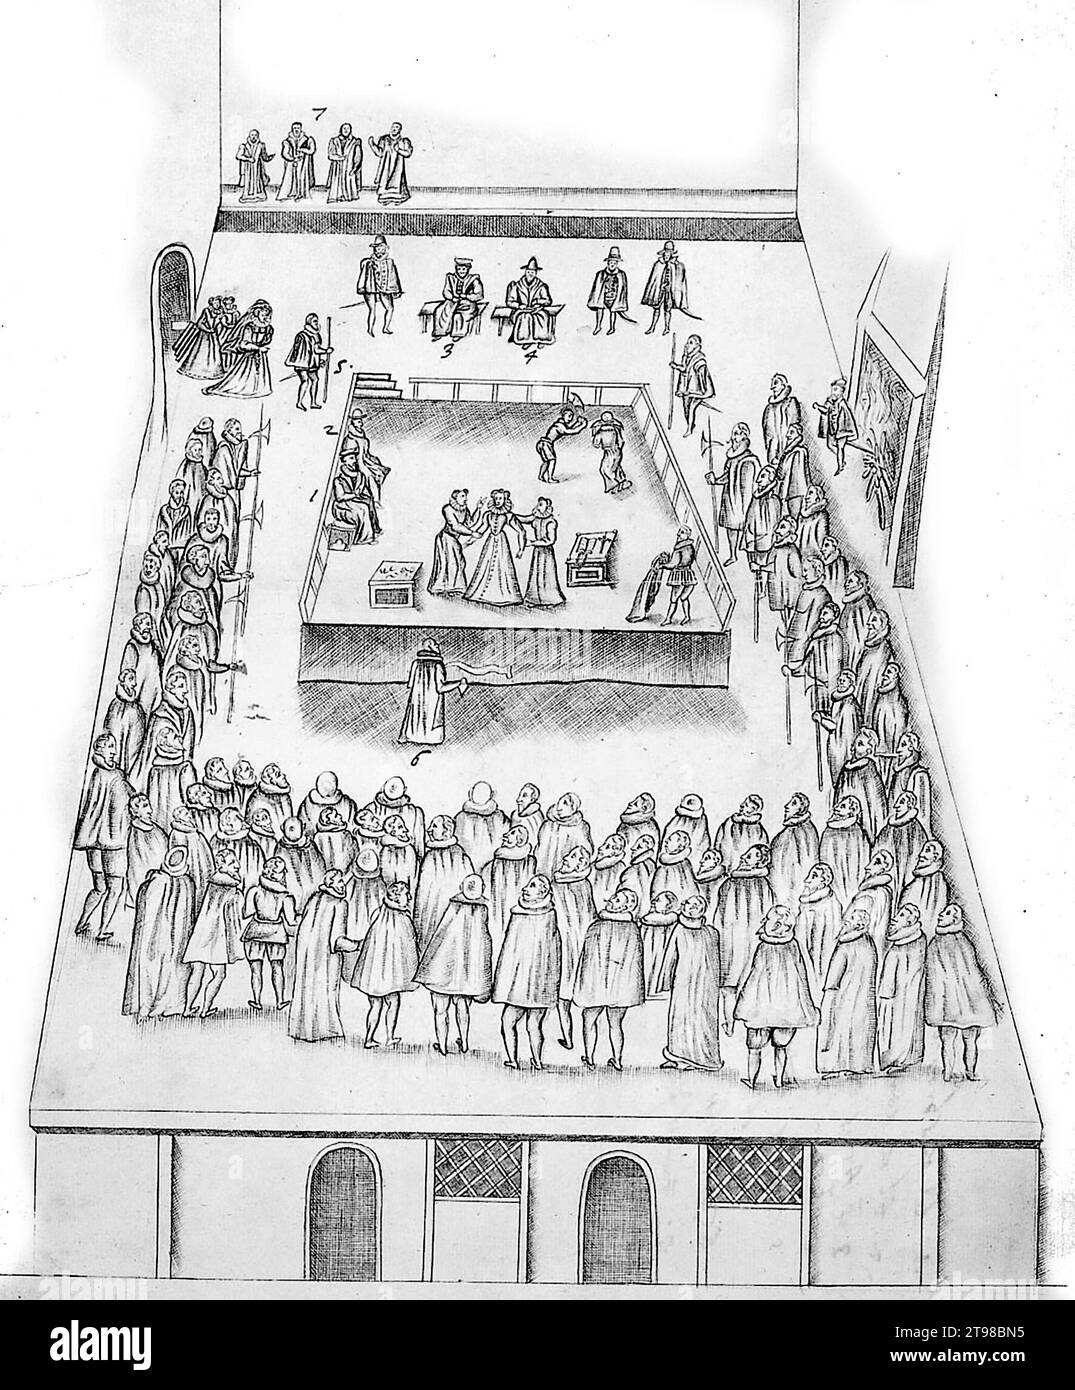 L'esecuzione di Maria Regina di Scozia l'8 febbraio 1587, disegno del testimone oculare Robert Beale, Clerk of the Privy Council alla Regina Elisabetta i, 1587 Foto Stock